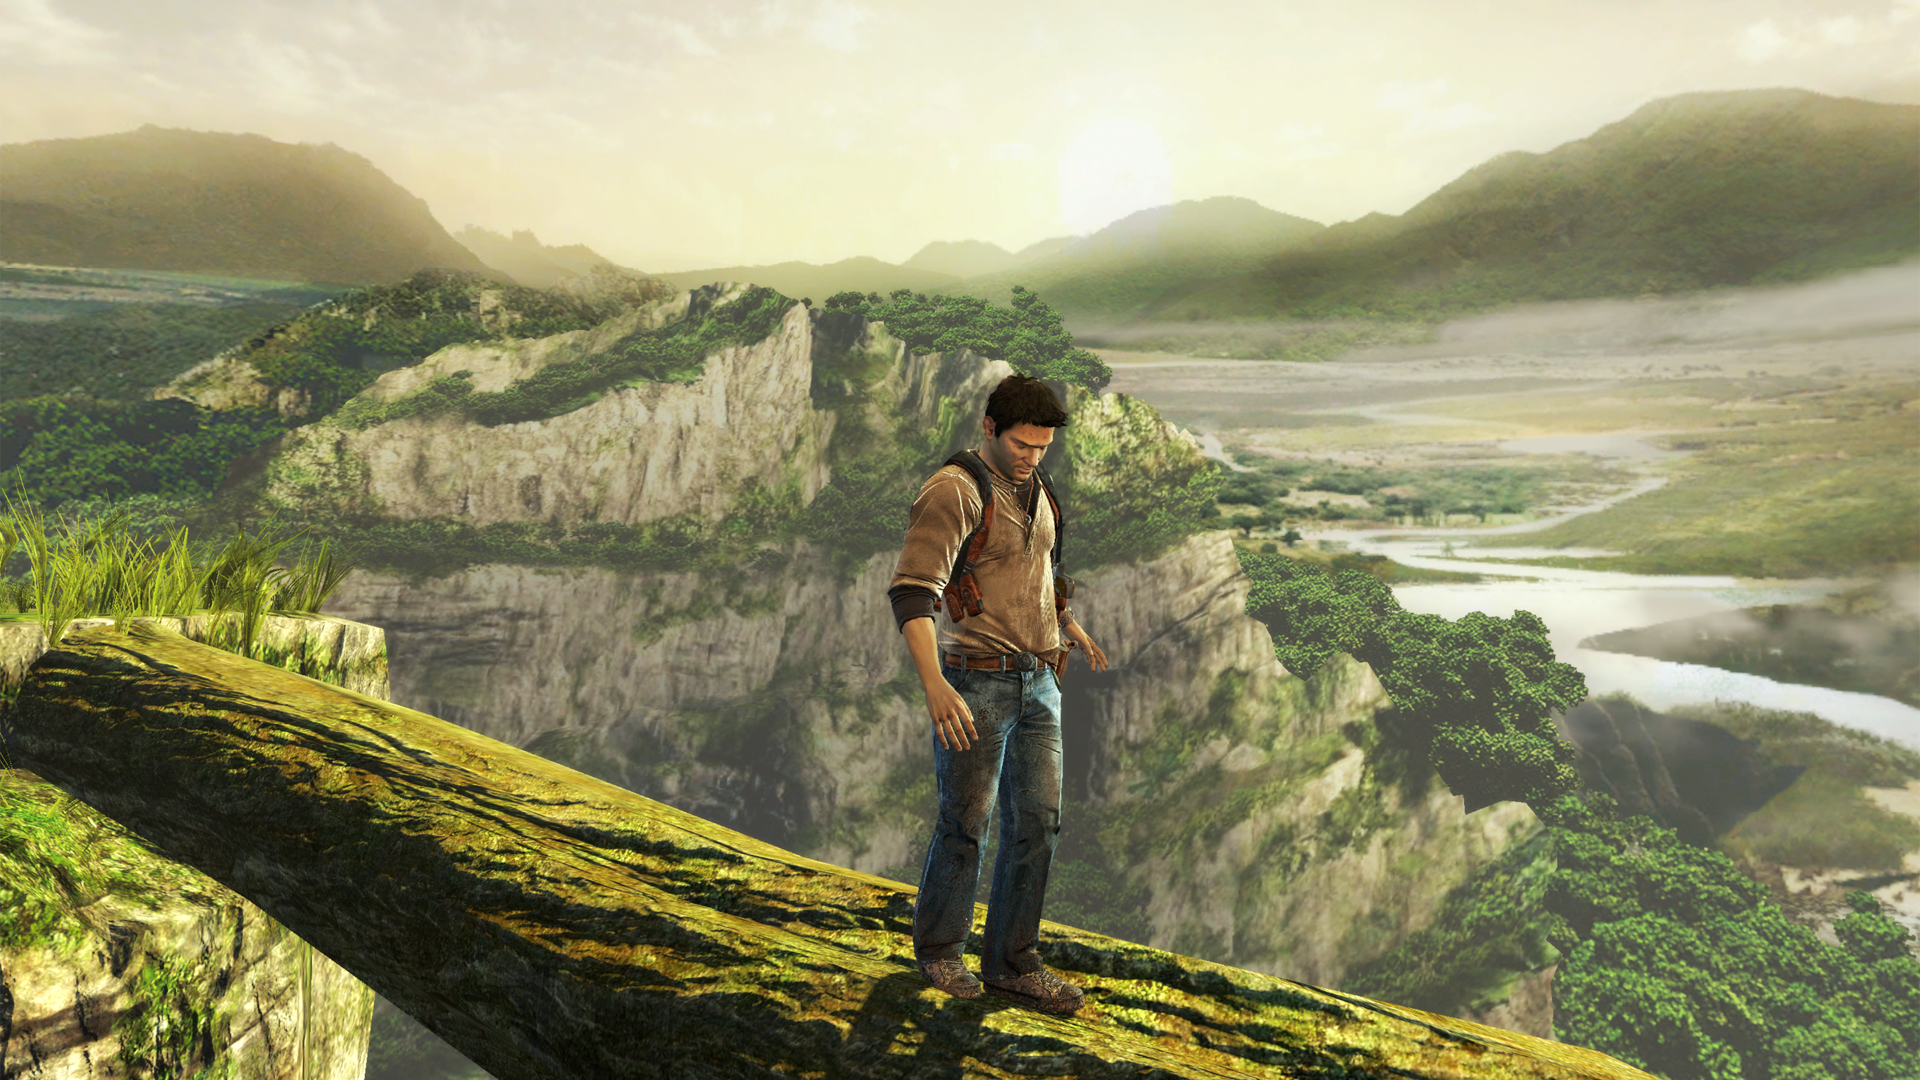 Gamescom 2011: Uncharted: Golden Abyss Screenshots